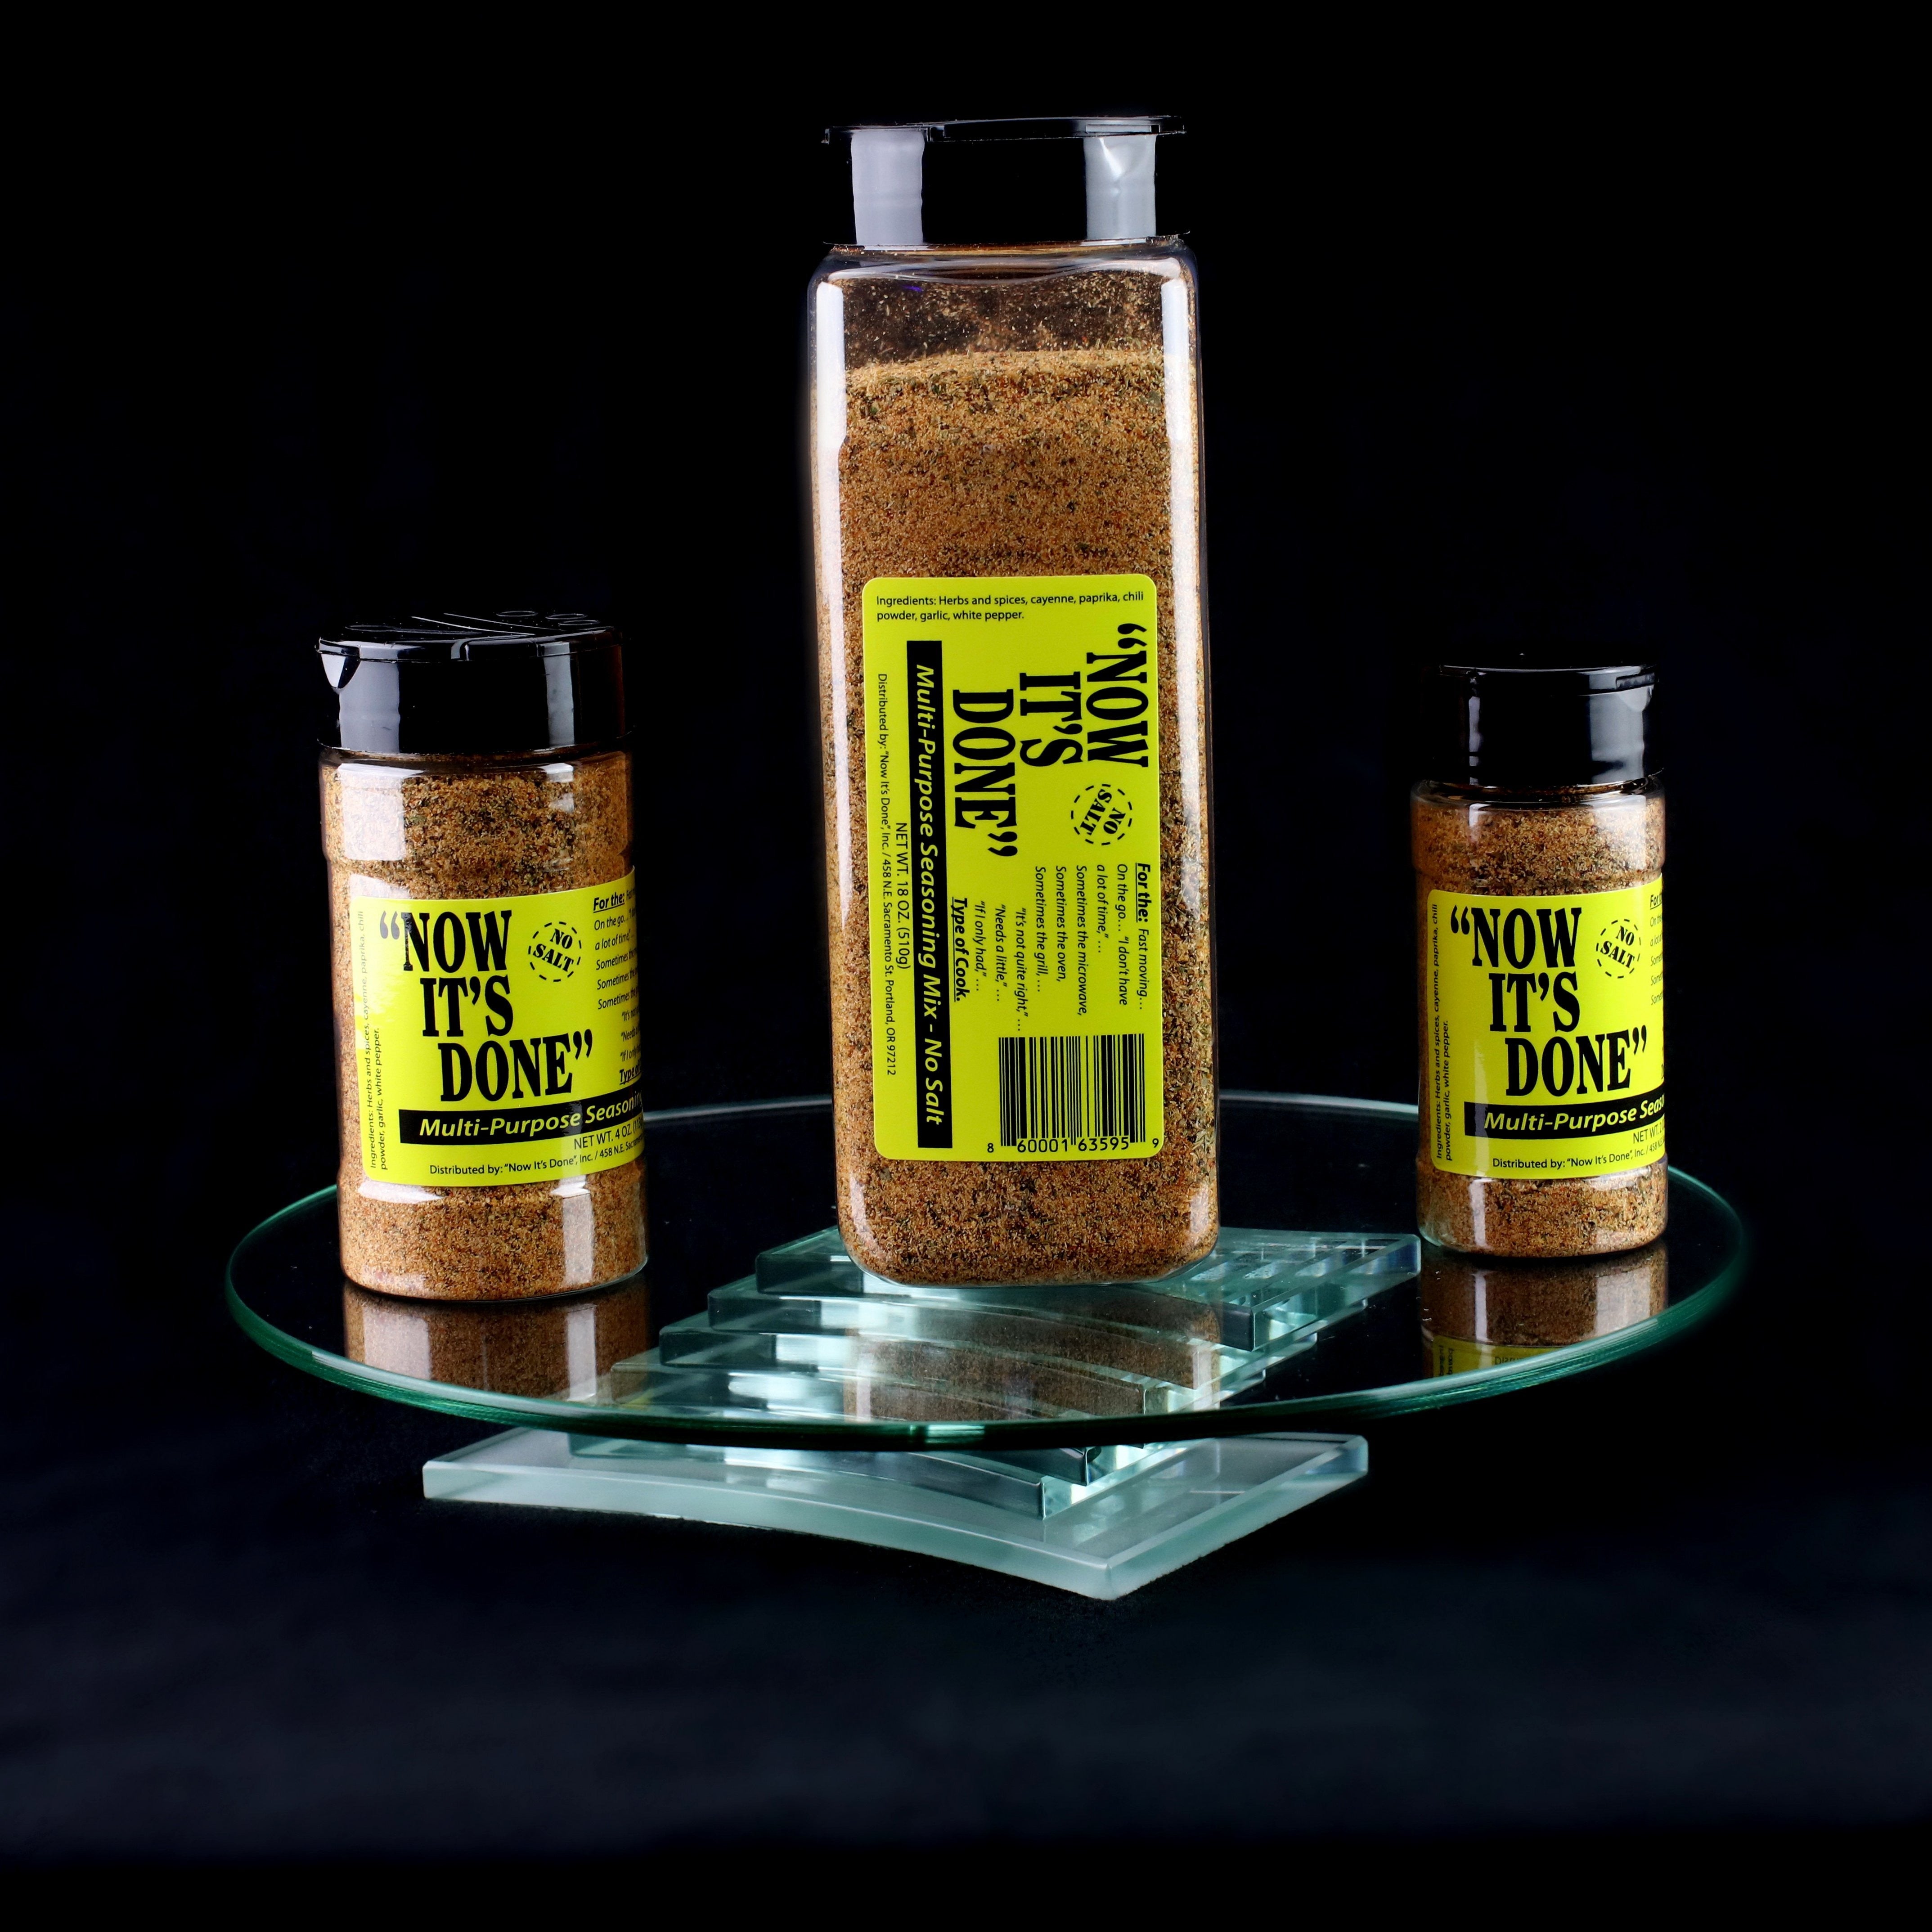 No Salt Seasonings Bundle – MFER Seasonings & Sauces